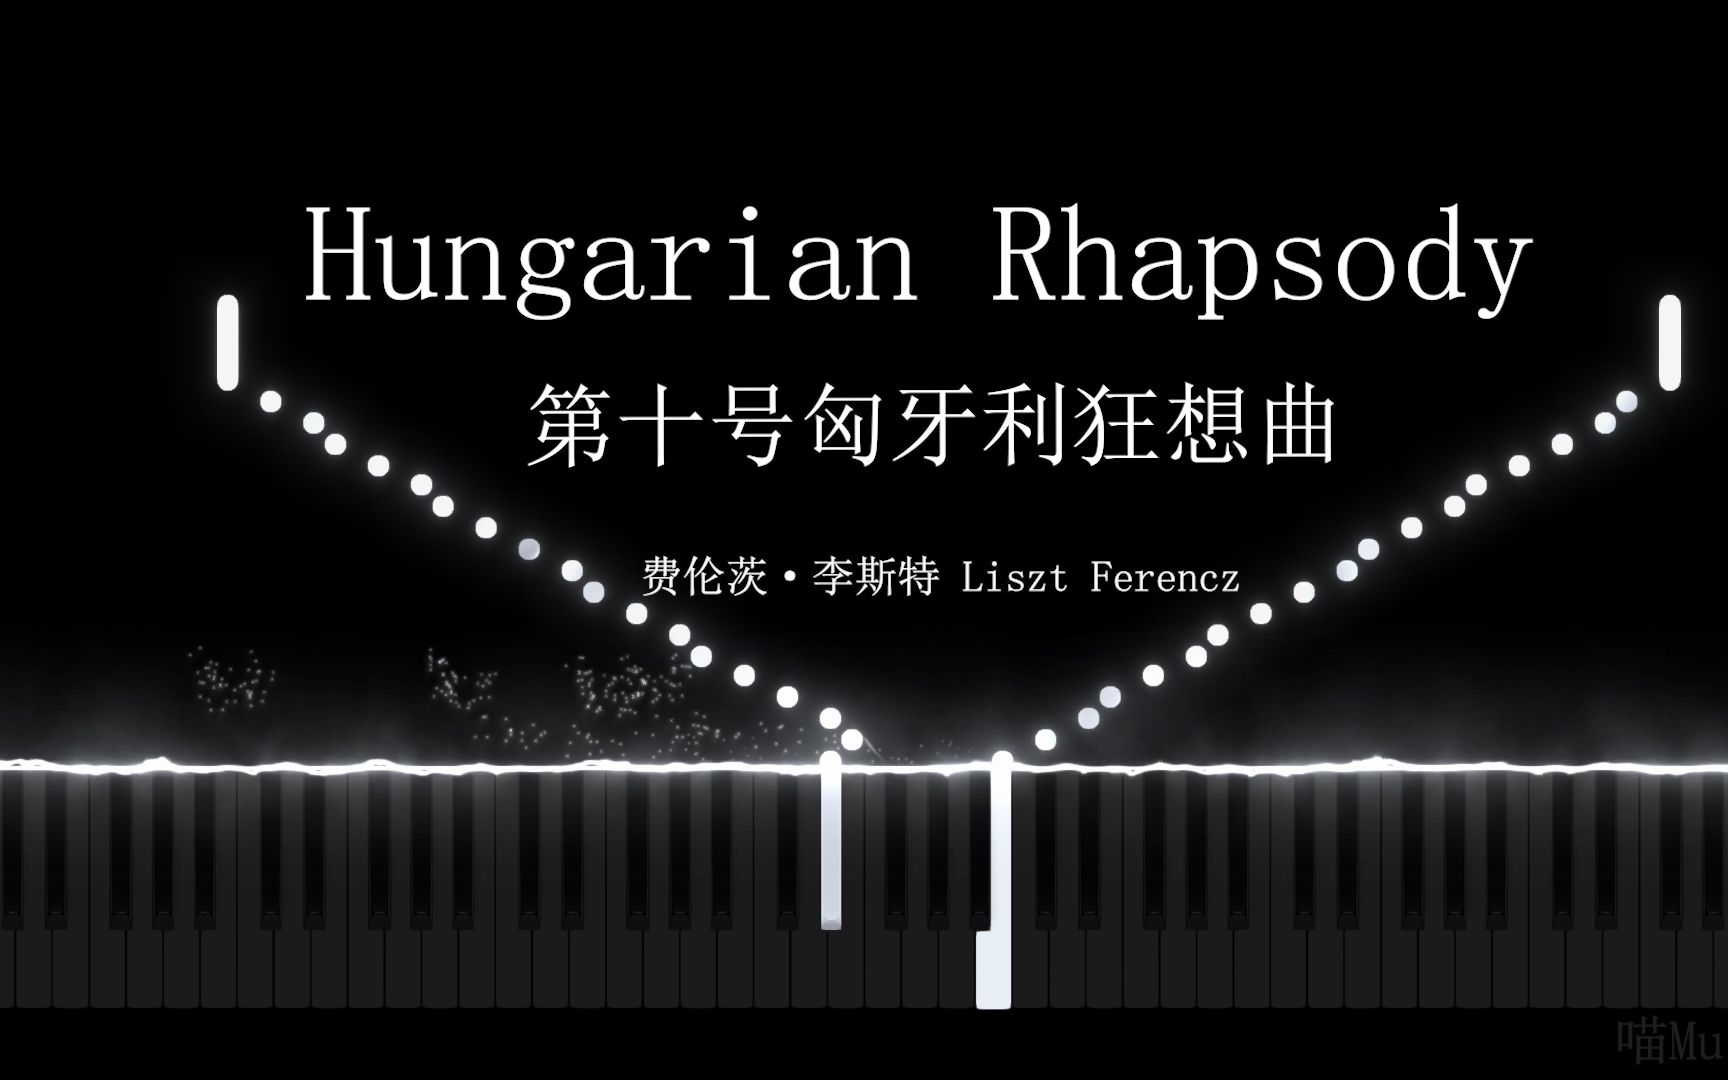 [图]世界超难钢琴曲系列之 李斯特 第十号匈牙利狂想曲【Hungarian Rhapsody No.10】